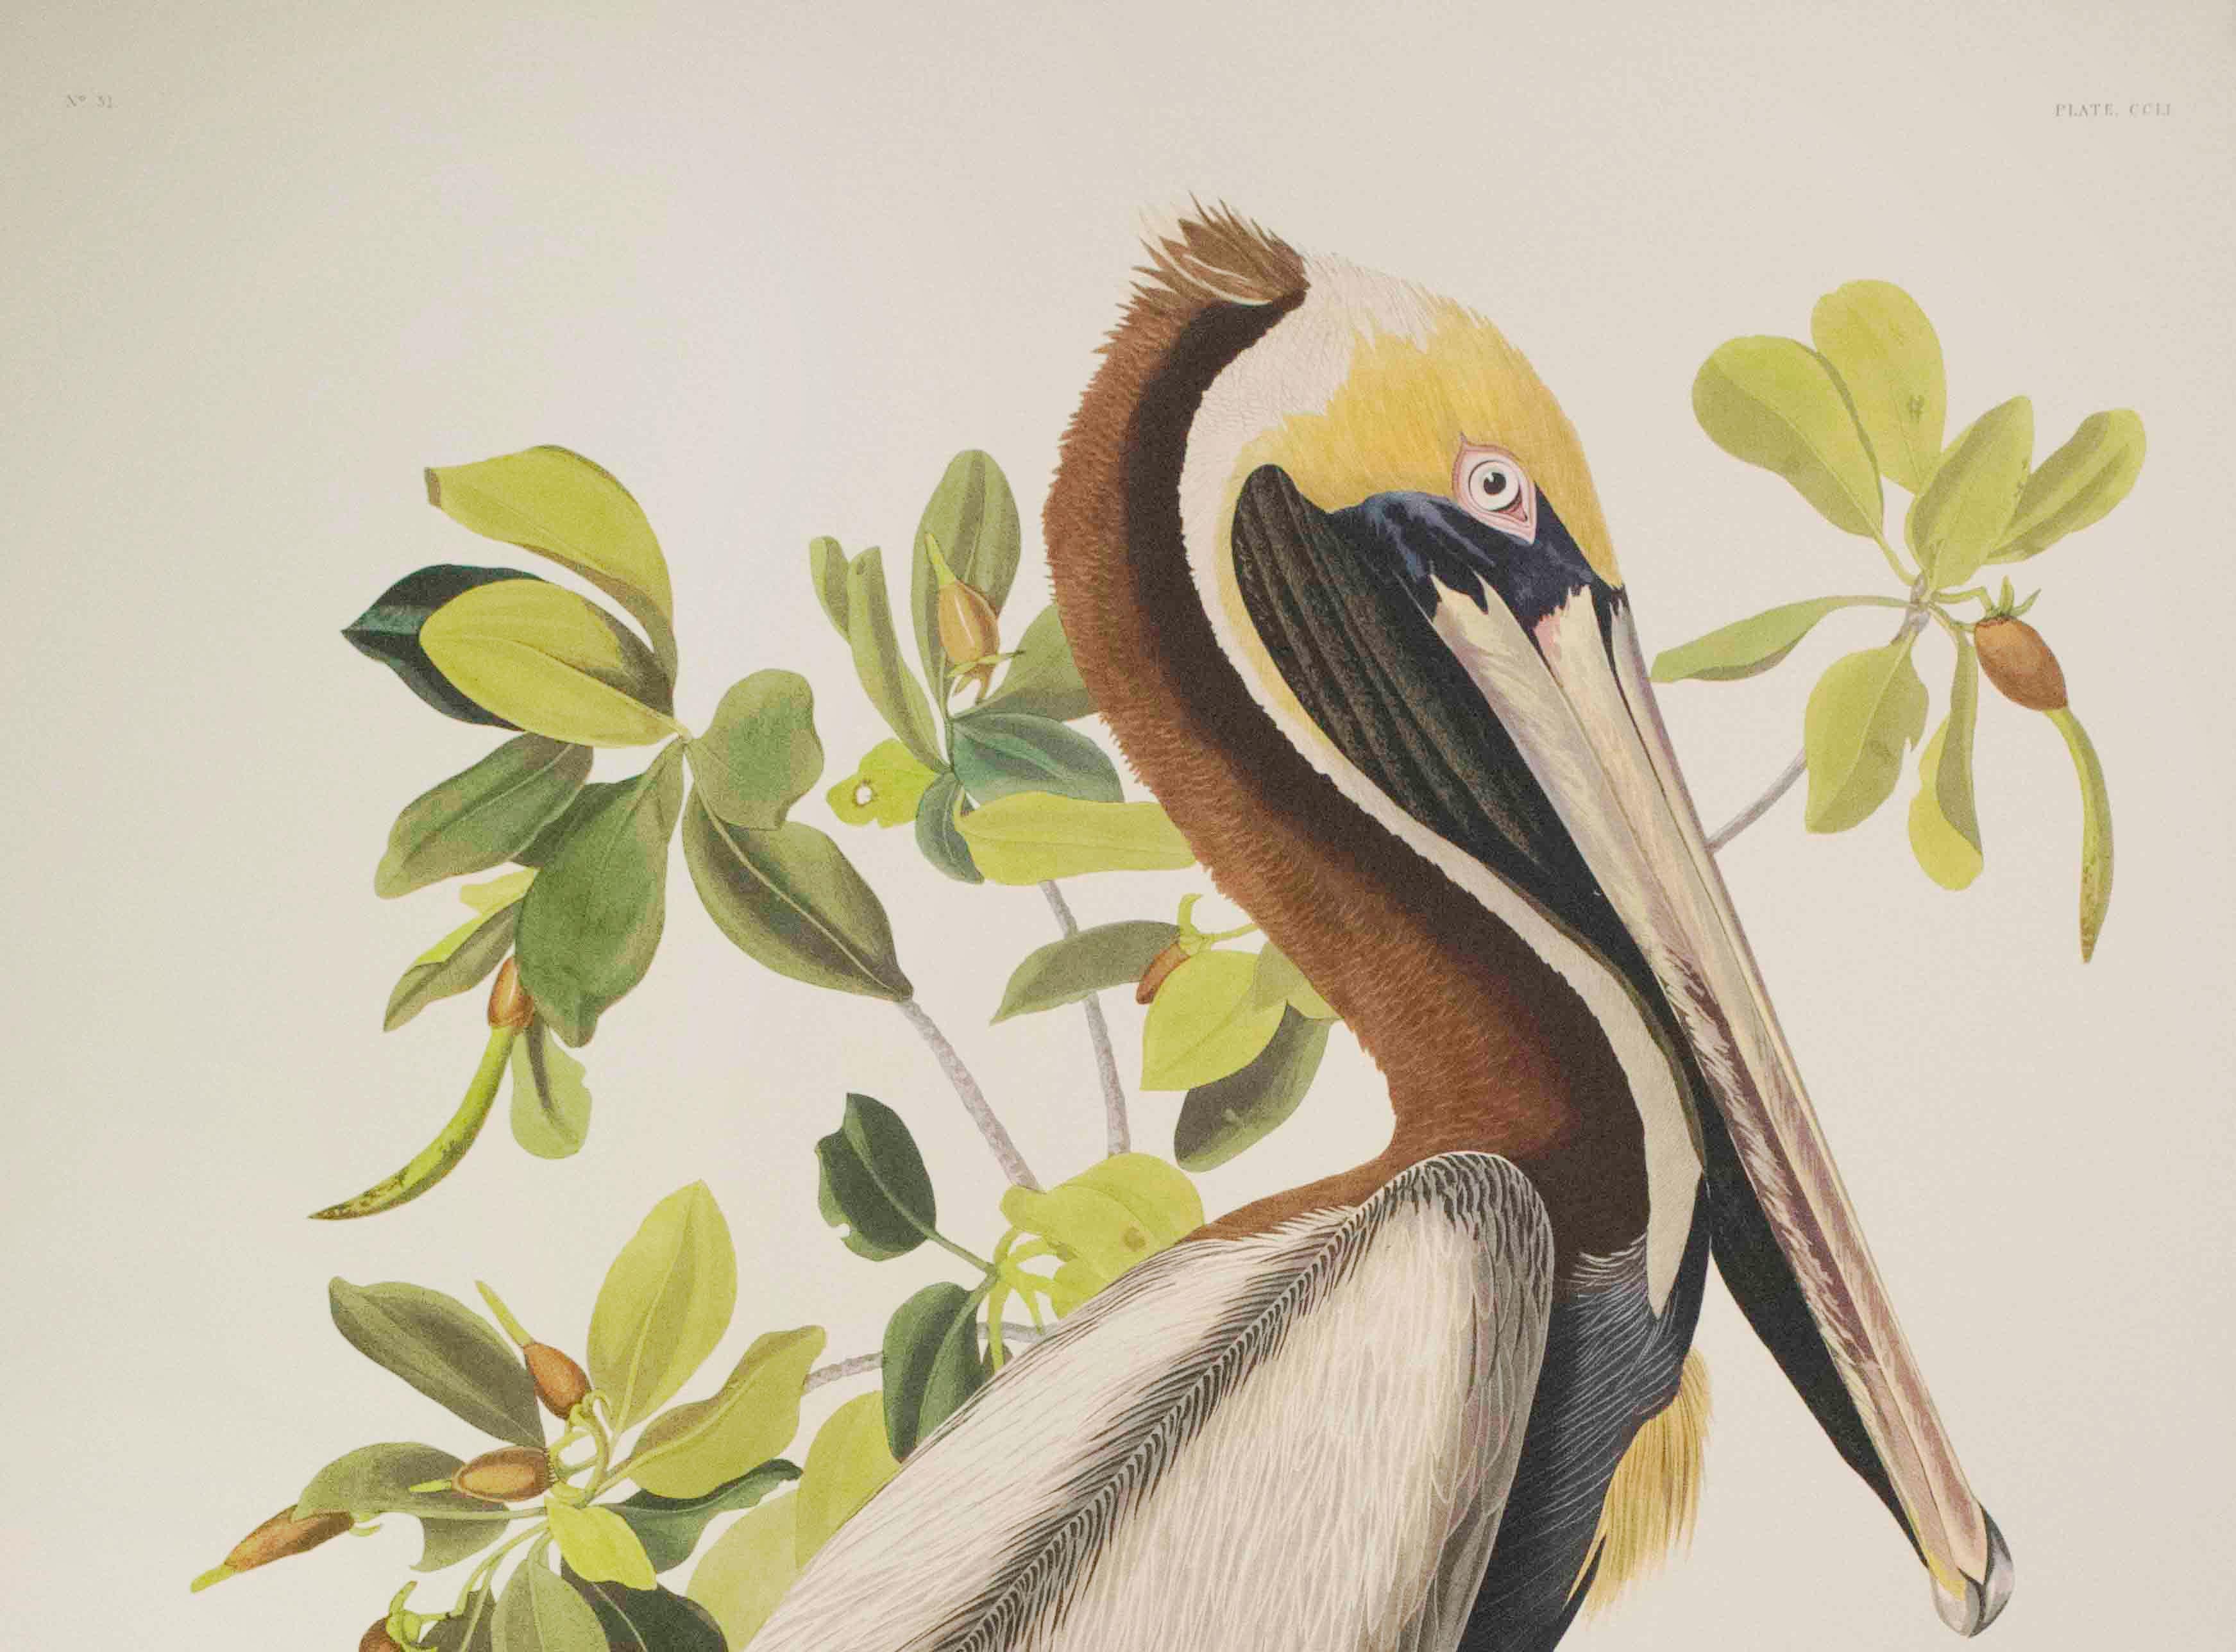 Pélican marron, édition Pl. 251 - Print de After John James Audubon